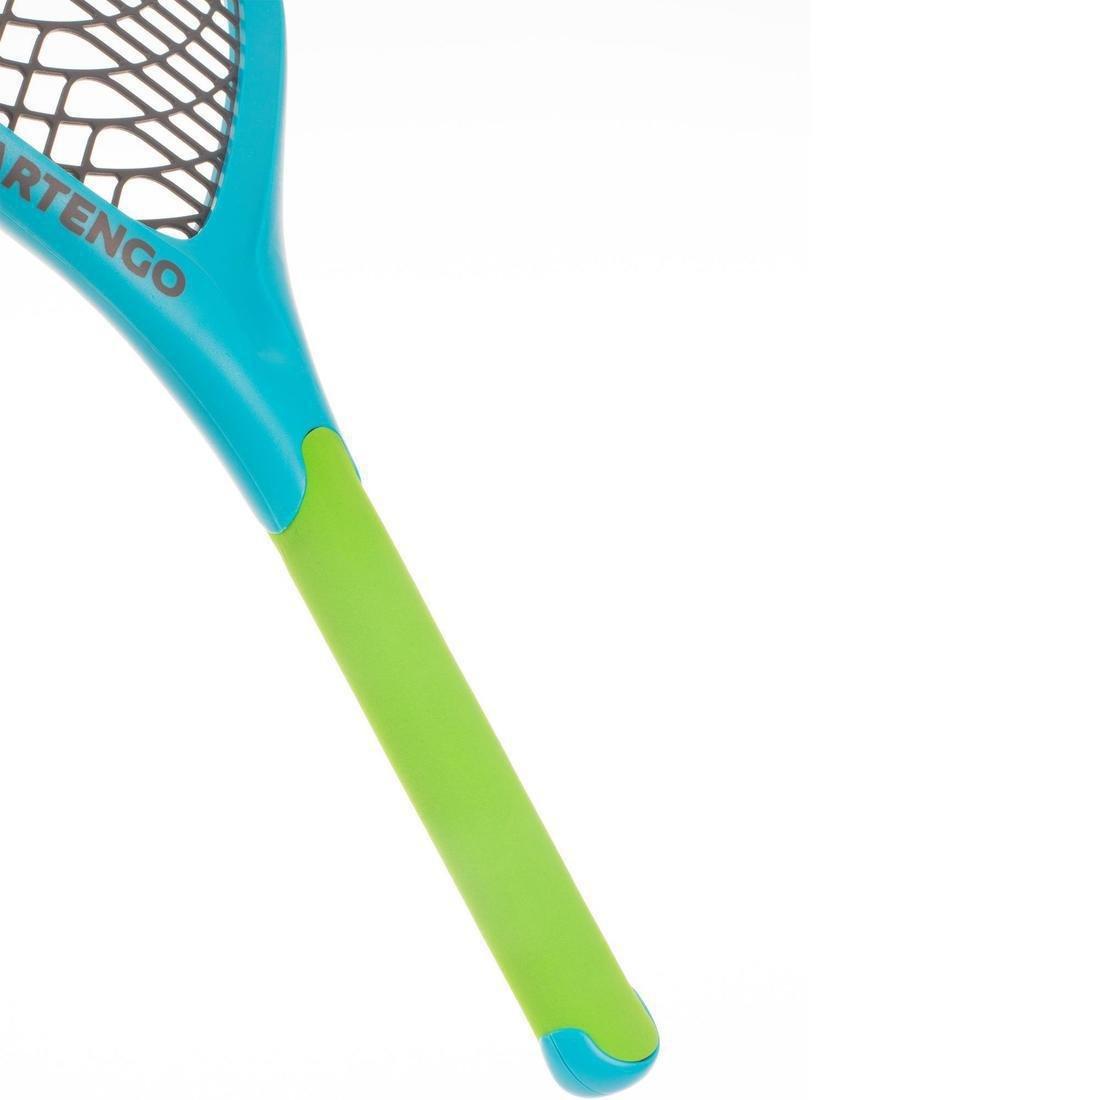 ARTENGO - Set of 2 Rackets and 1 Ball Funyten/Green, Blue Azure